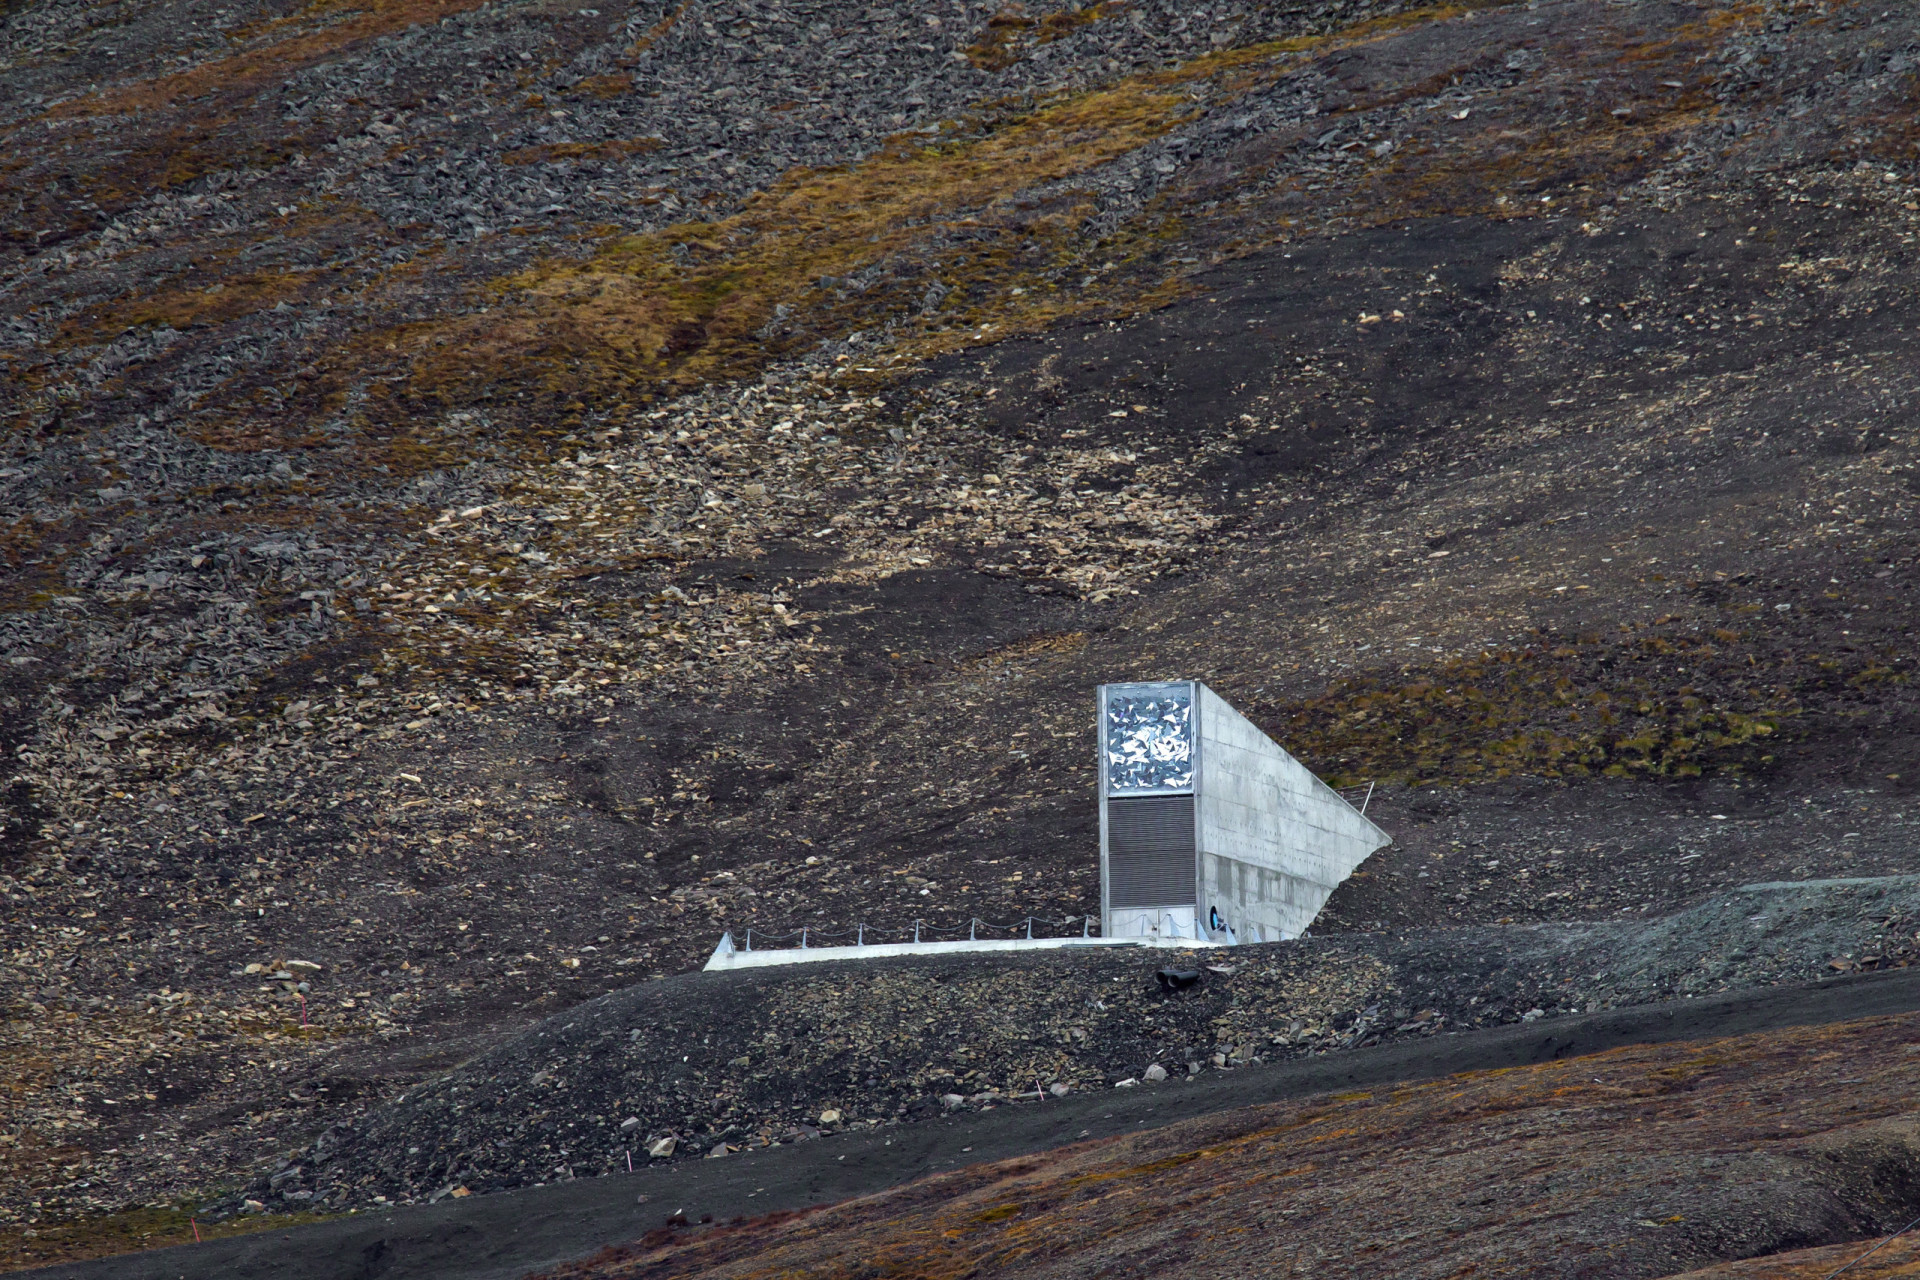 <p>Ubicado en la recóndita isla de Spitsbergen, en Noruega, este banco alberga 100 millones de semillas de todas partes de mundo por si algún día se produjese una hecatombe climática capaz de acabar con la vegetación del planeta.</p><p>También te puede interesar:<a href="https://www.starsinsider.com/n/322106?utm_source=msn.com&utm_medium=display&utm_campaign=referral_description&utm_content=525643es-mx"> Lo que pocos saben sobre Jack el Destripador</a></p>